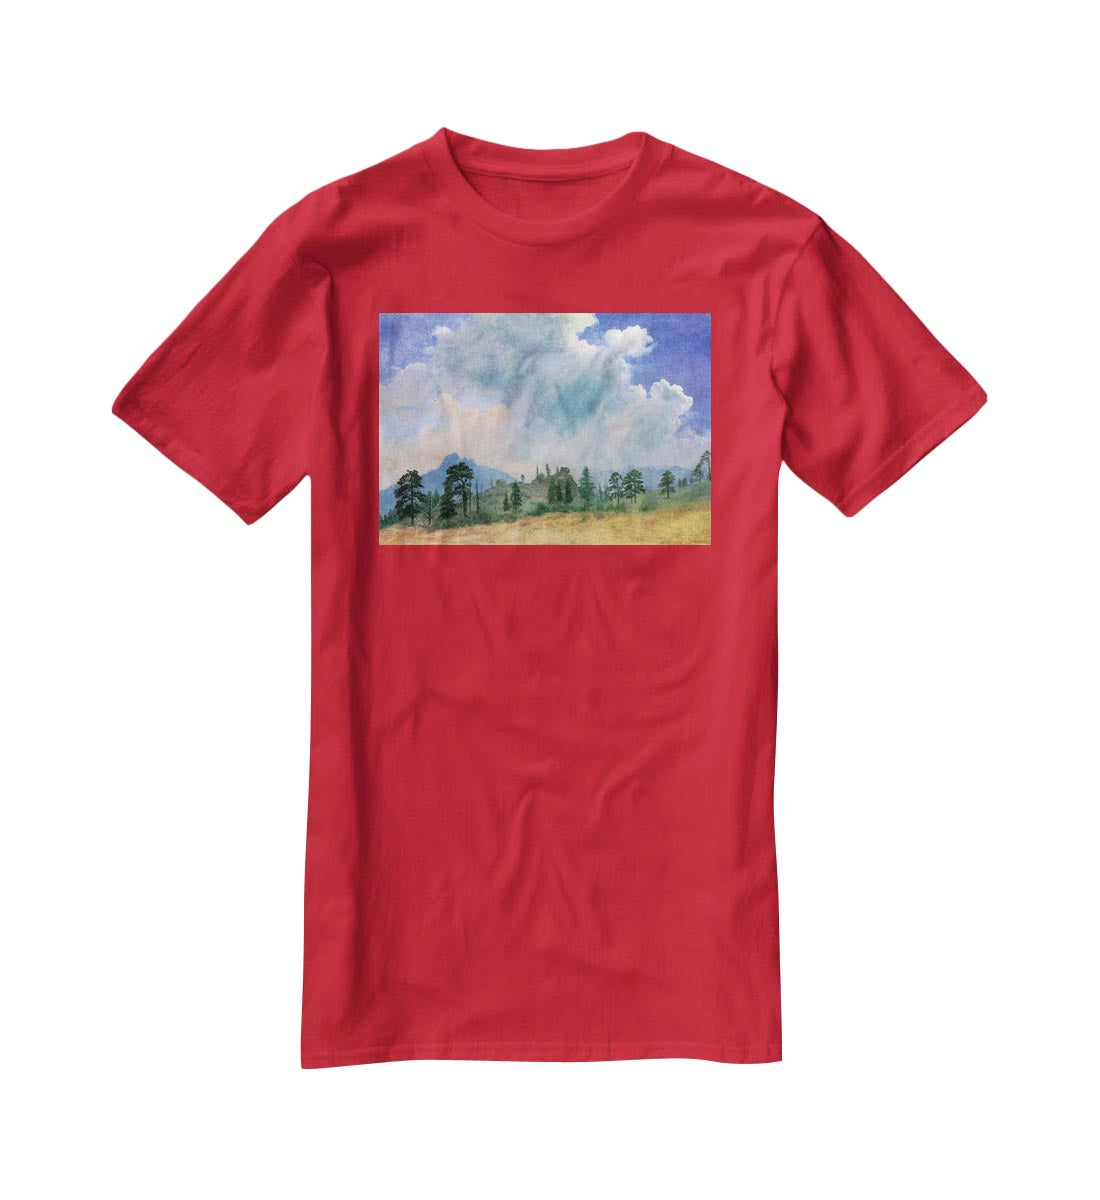 Fir trees and storm clouds by Bierstadt T-Shirt - Canvas Art Rocks - 4